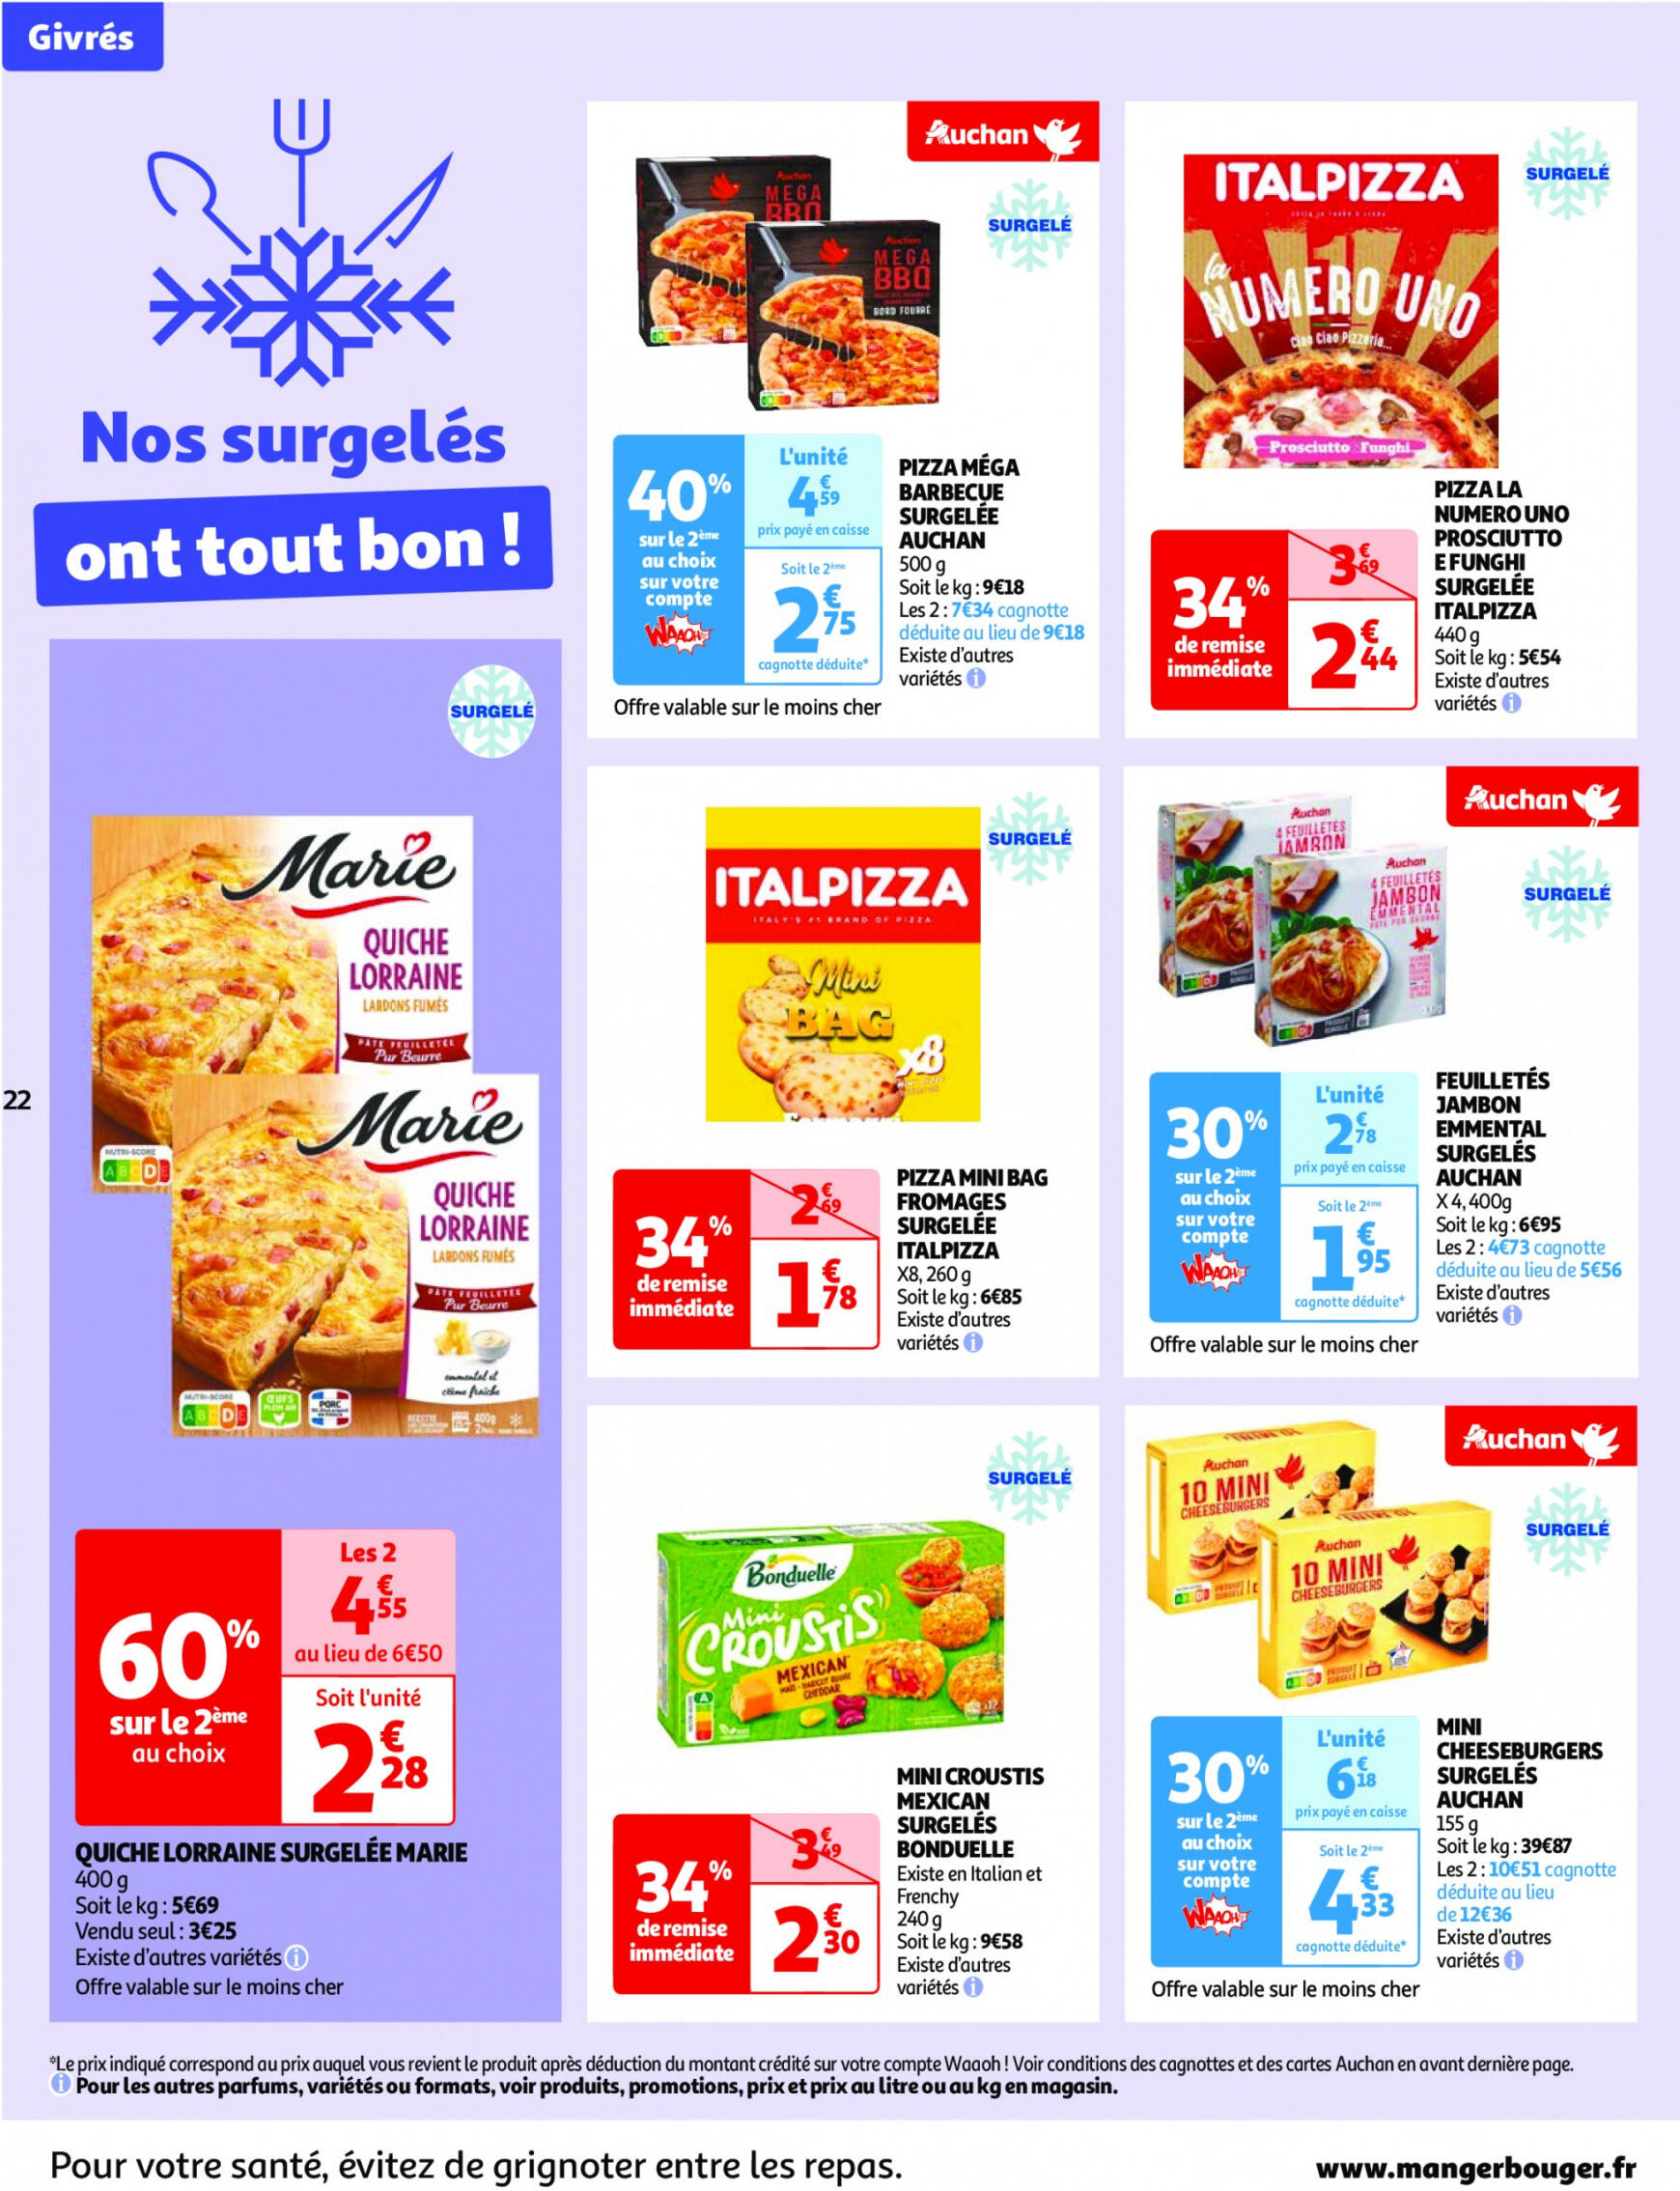 auchan - Auchan - Nos surgelés ont tout bon folder huidig 14.05. - 21.05. - page: 22